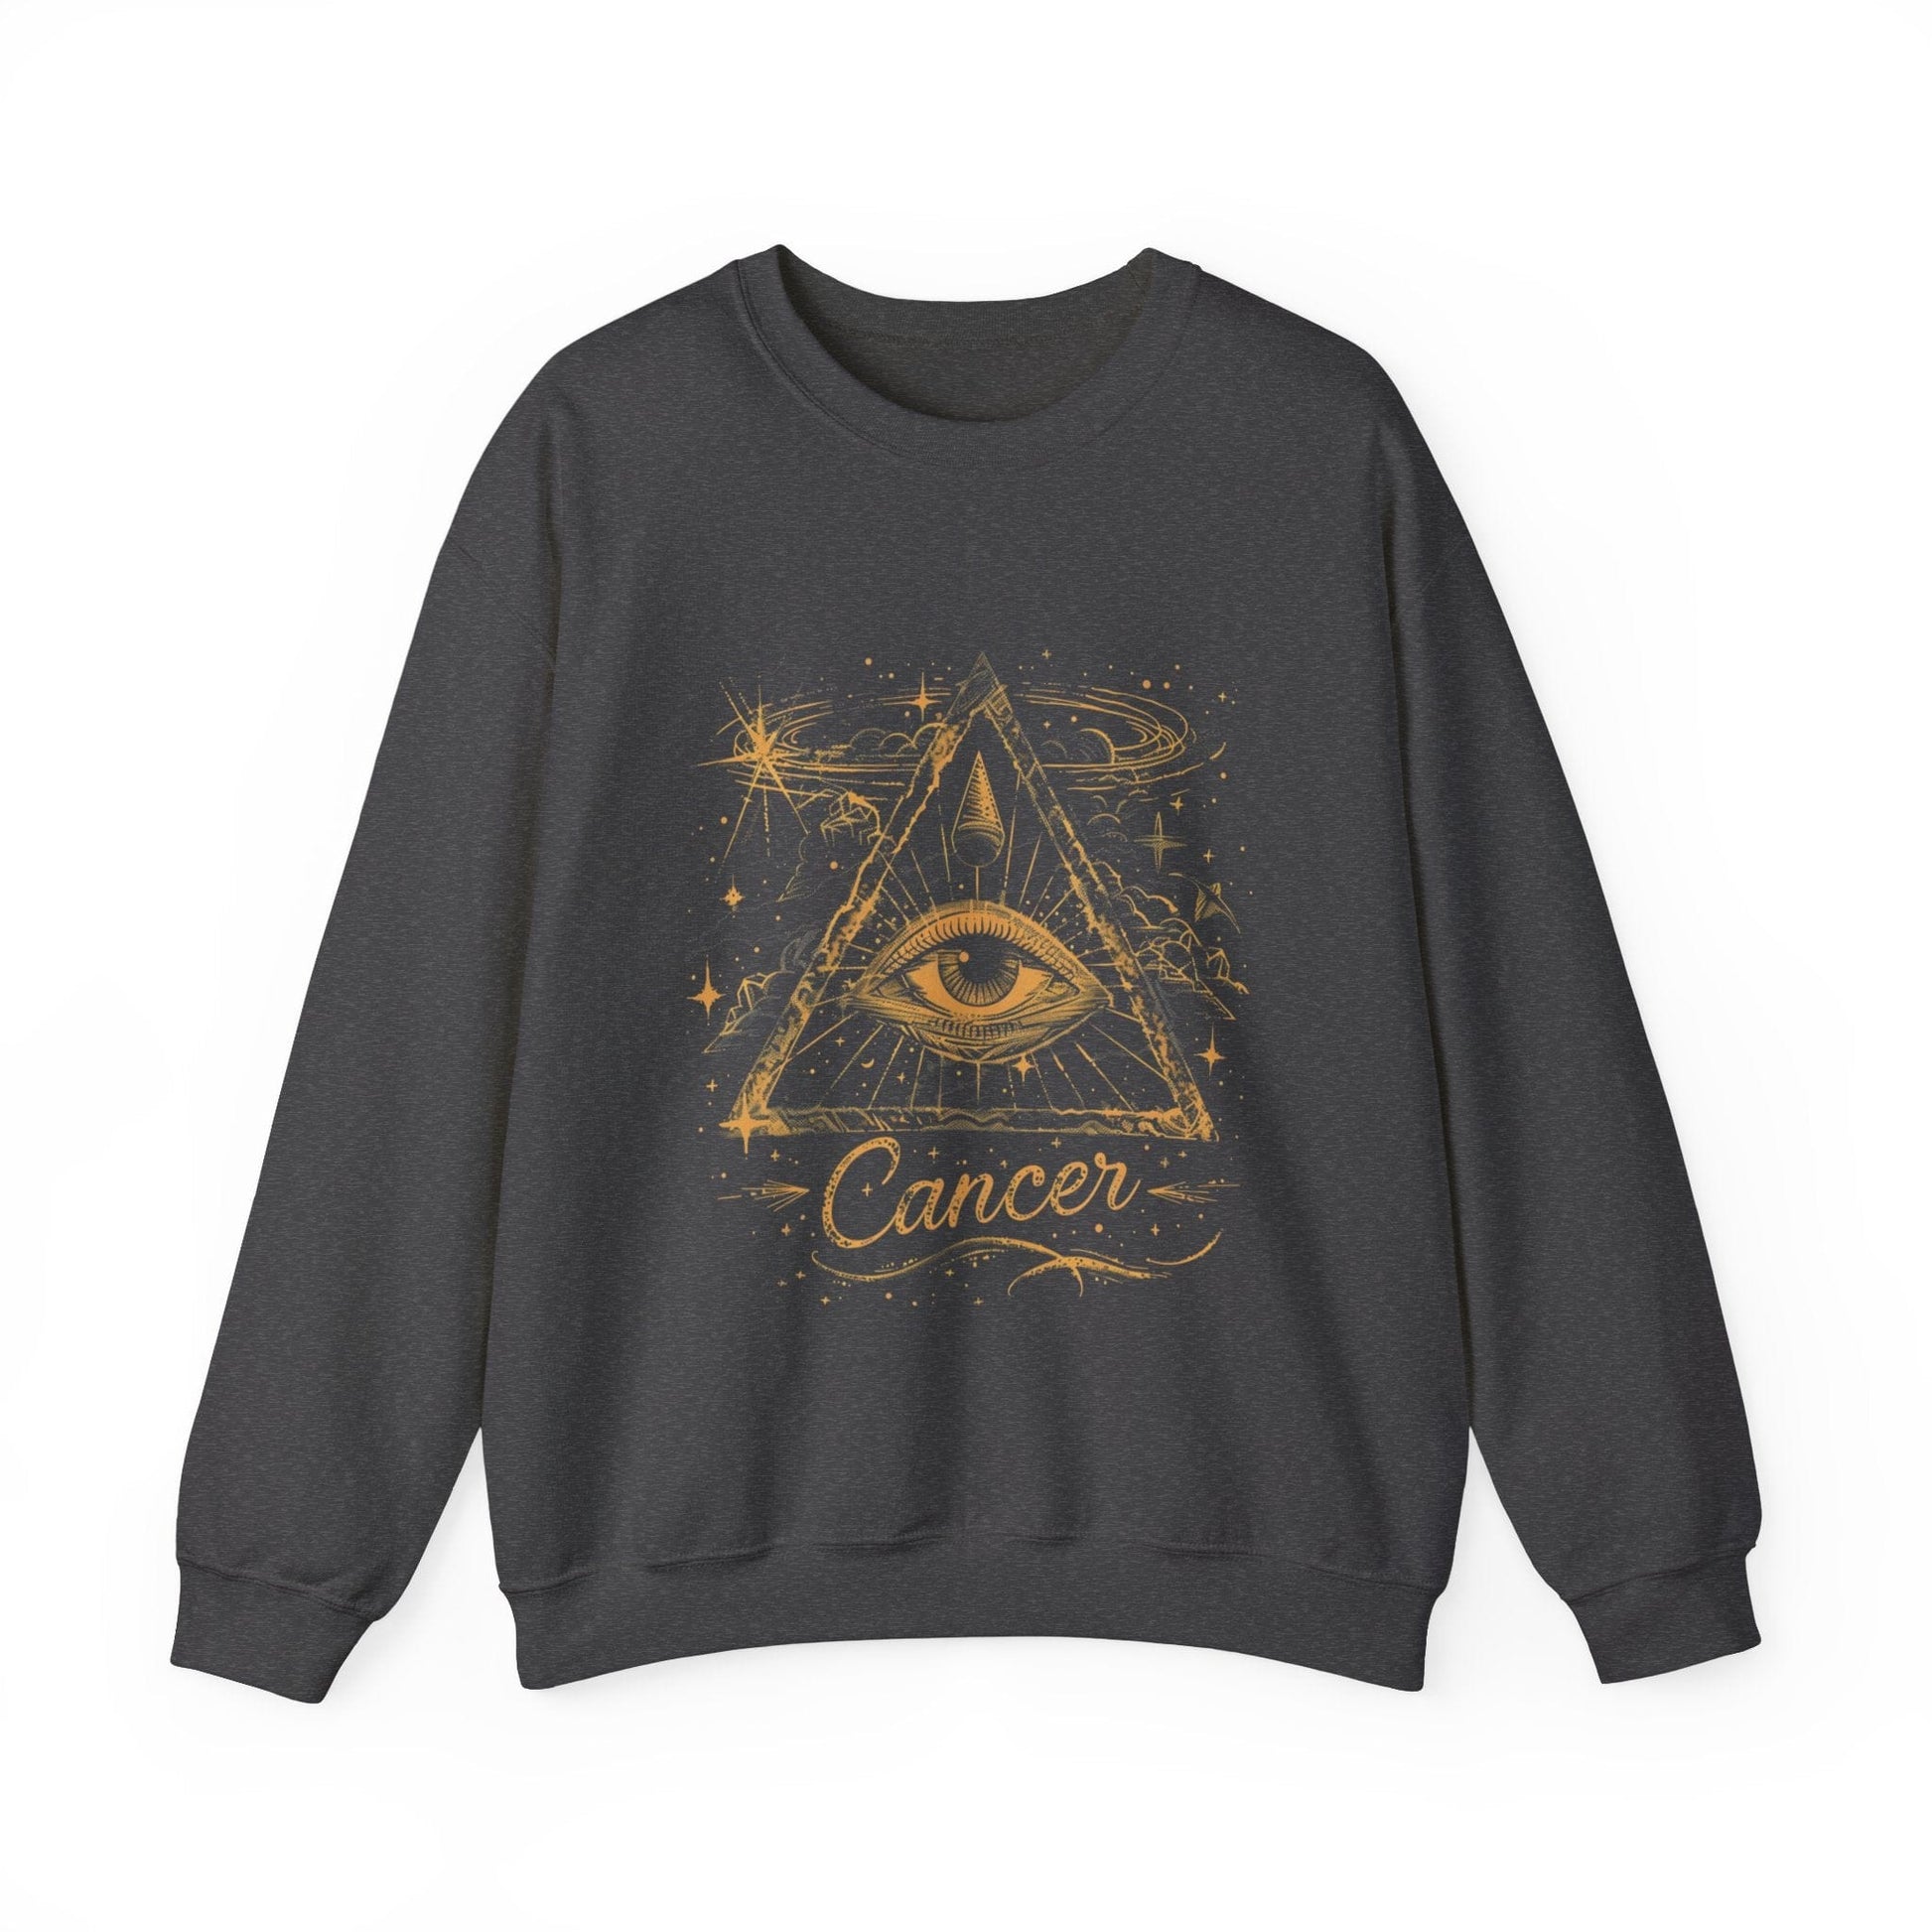 Sweatshirt S / Dark Heather Cancer Mystical Allure Crewneck Sweatshirt: Cosmic Comfort Meets Esoteric Style